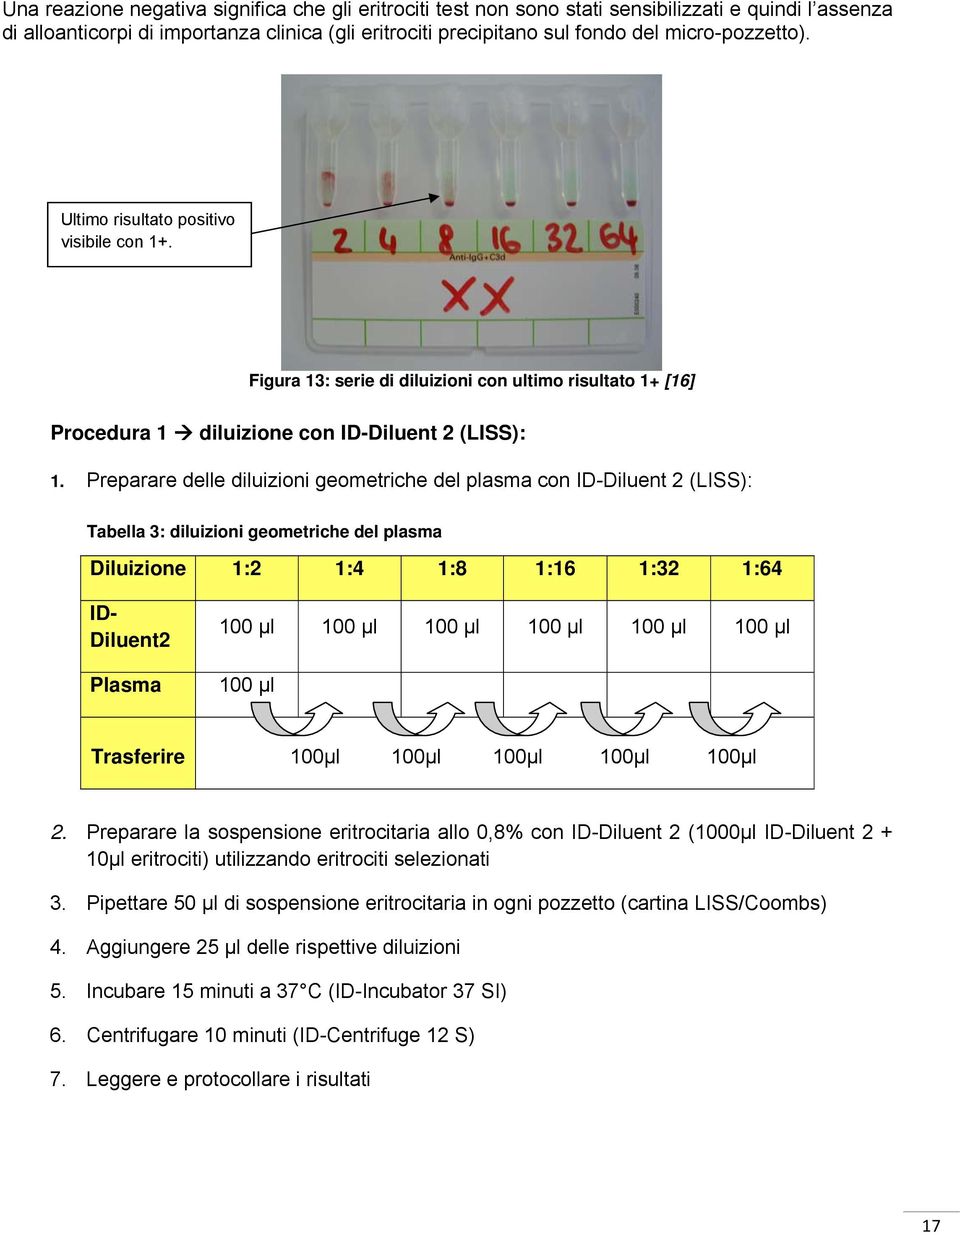 Preparare delle diluizioni geometriche del plasma con ID-Diluent 2 (LISS): Tabella 3: diluizioni geometriche del plasma Diluizione 1:2 1:4 1:8 1:16 1:32 1:64 ID- Diluent2 Plasma 100 μl 100 μl 100 μl